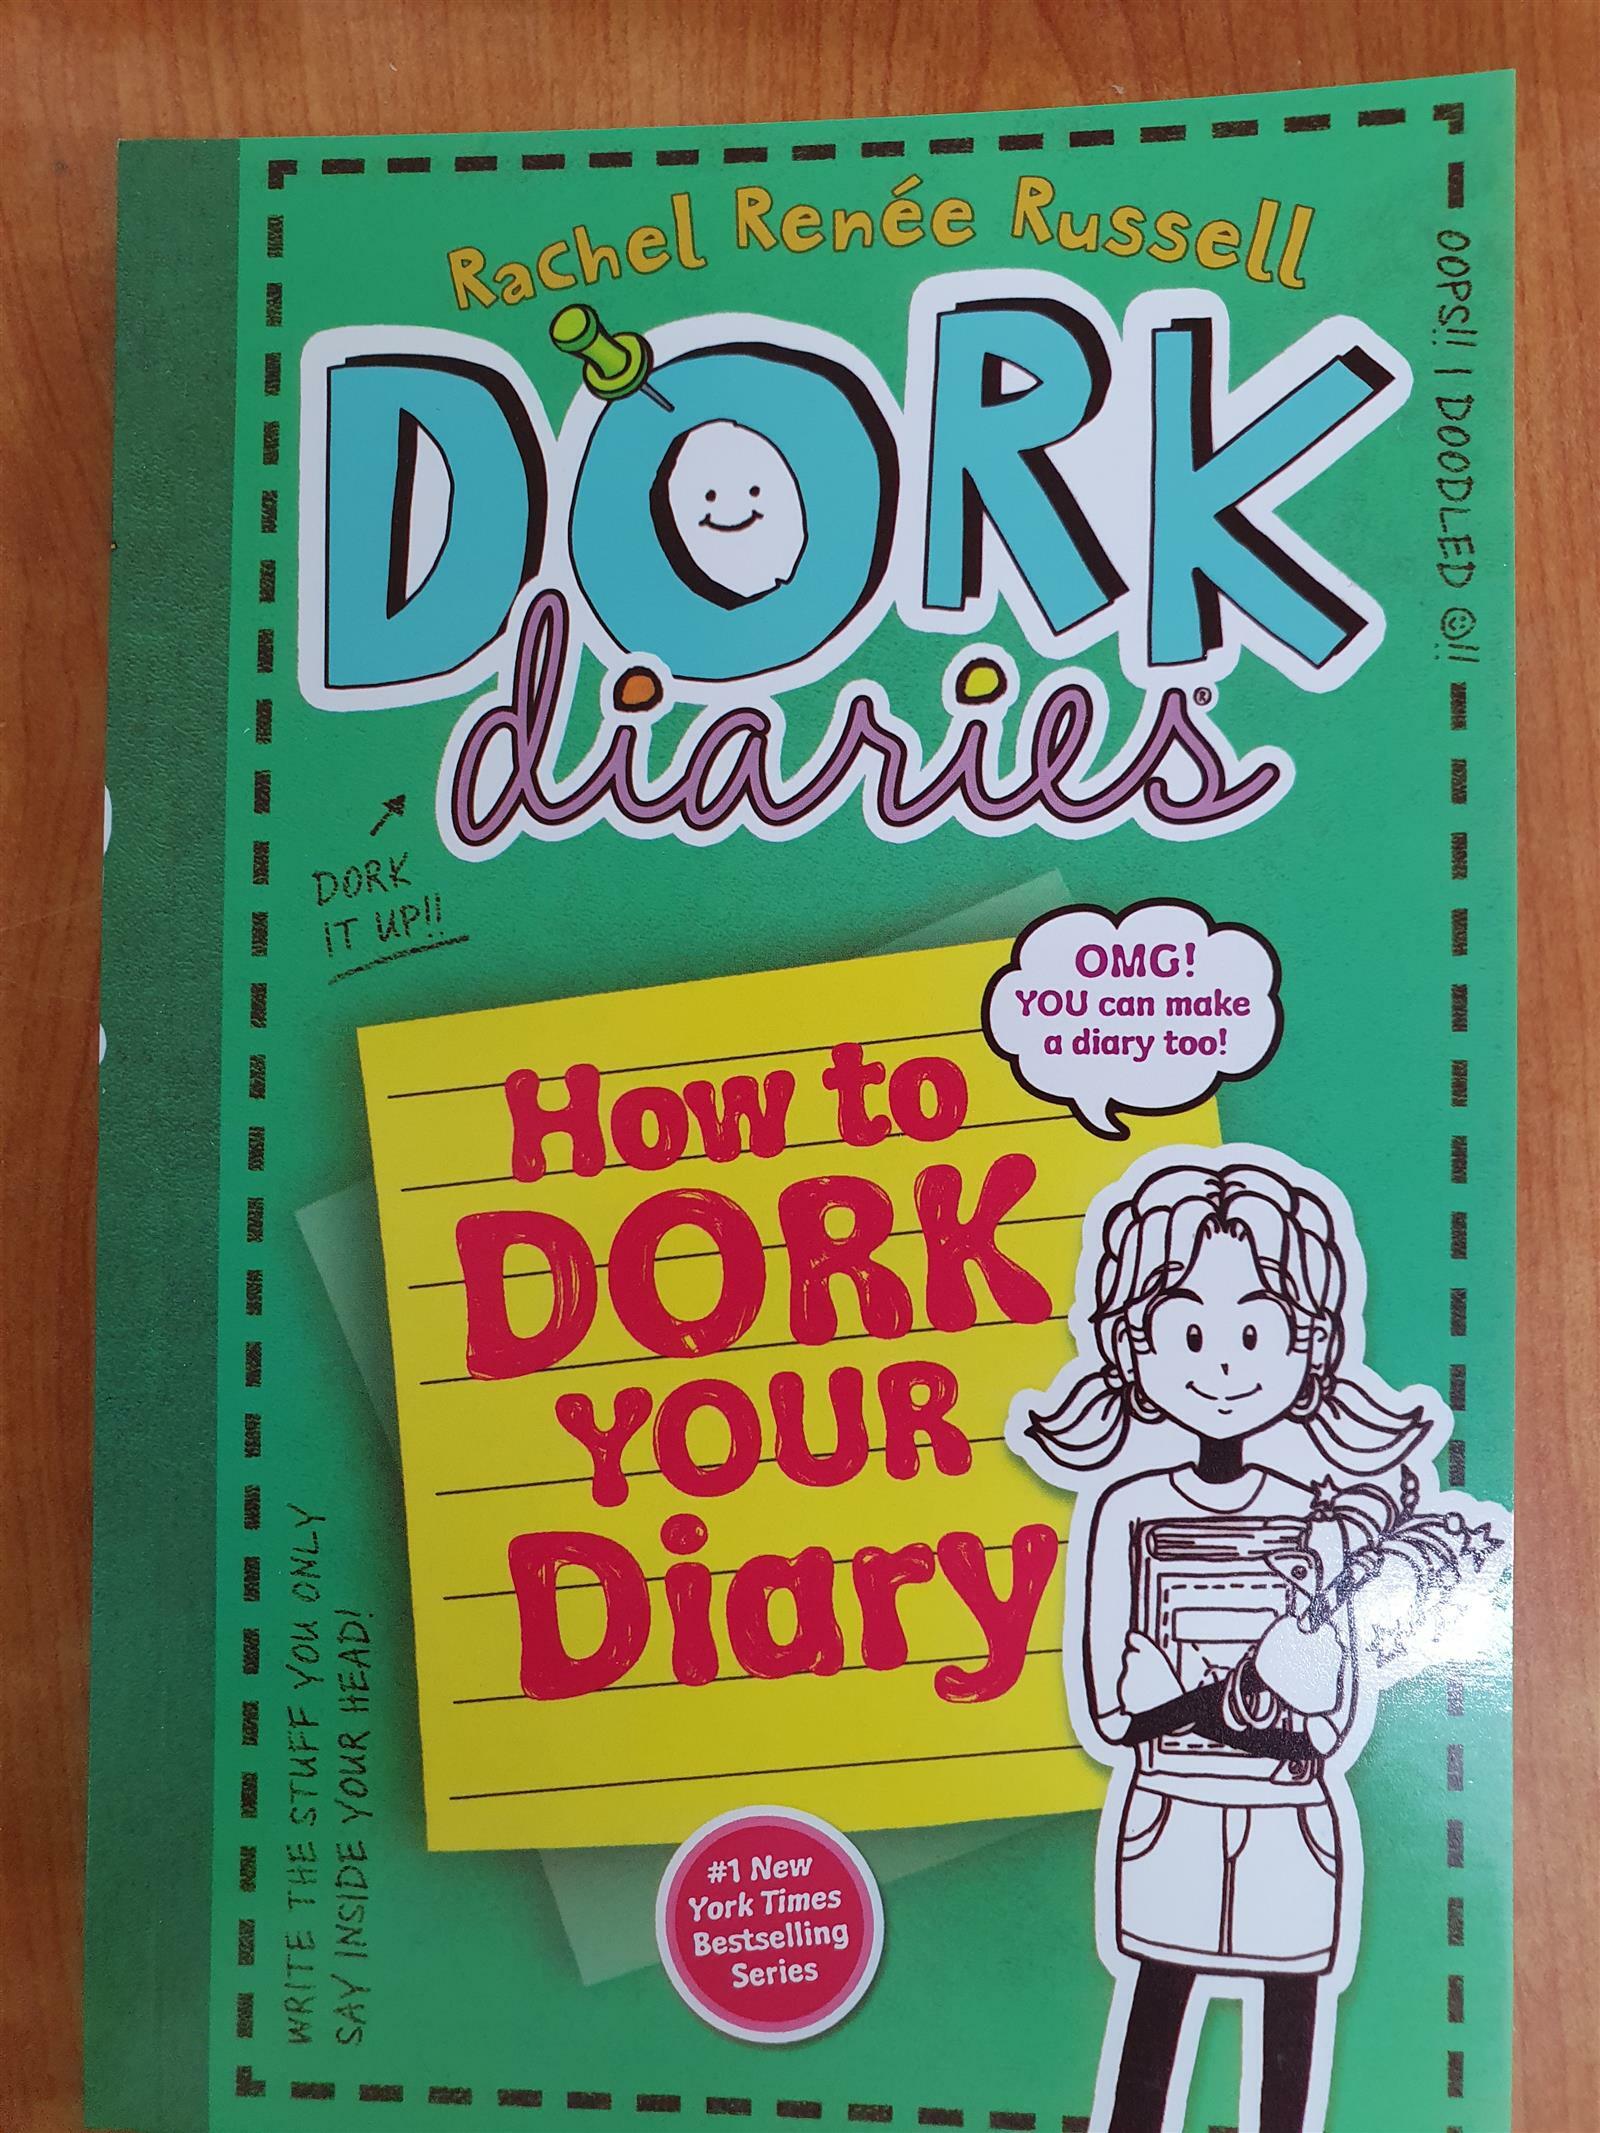 [중고] Dork Diaries 3.5 How to Dork Your Diary (Paperback)